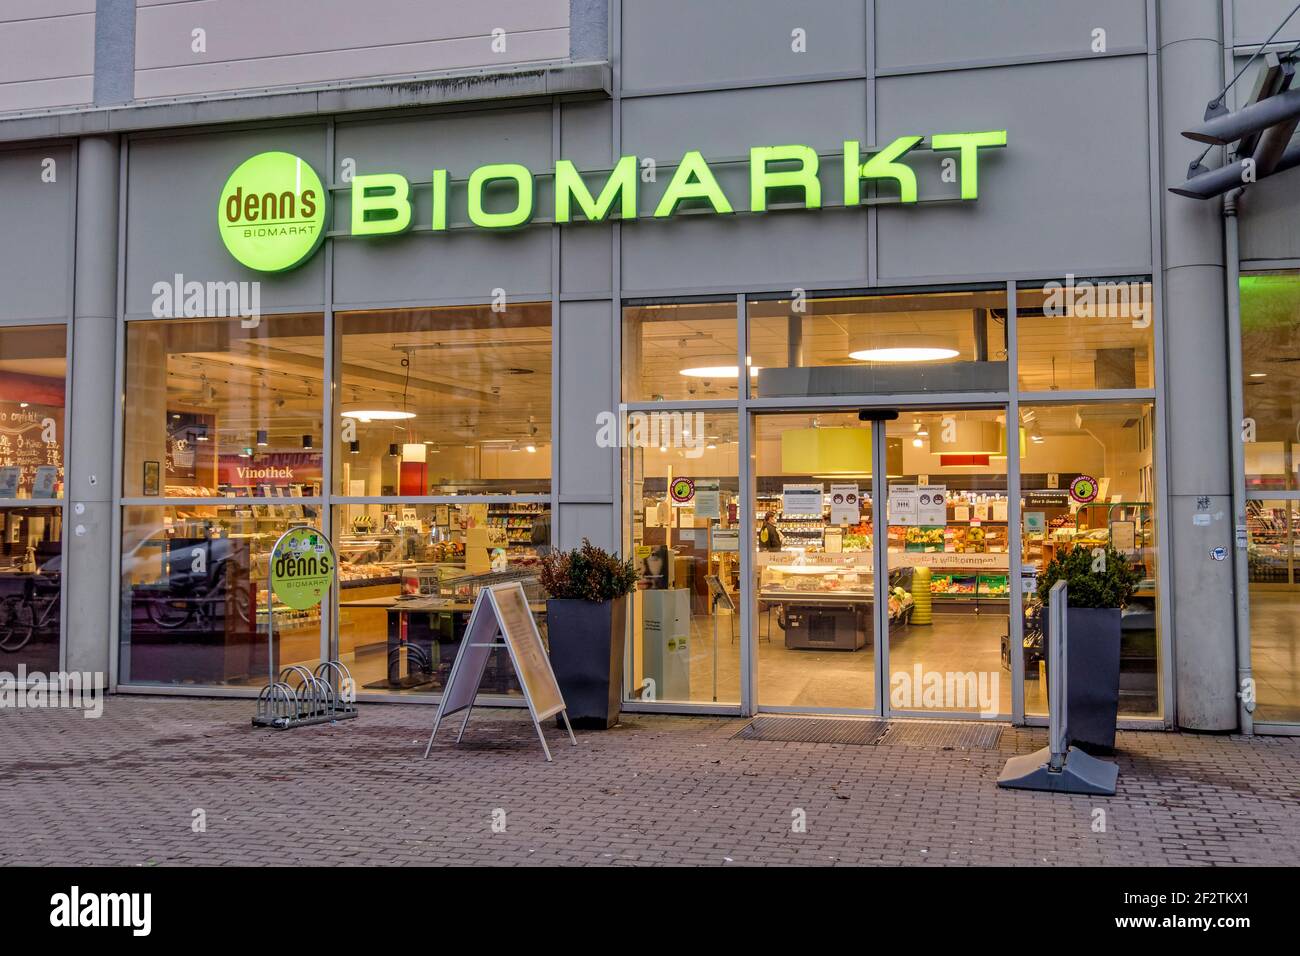 denns Biomarkt , Hasenheide, Berlin-Neukoelln, Aussenaufnahme, Stock Photo